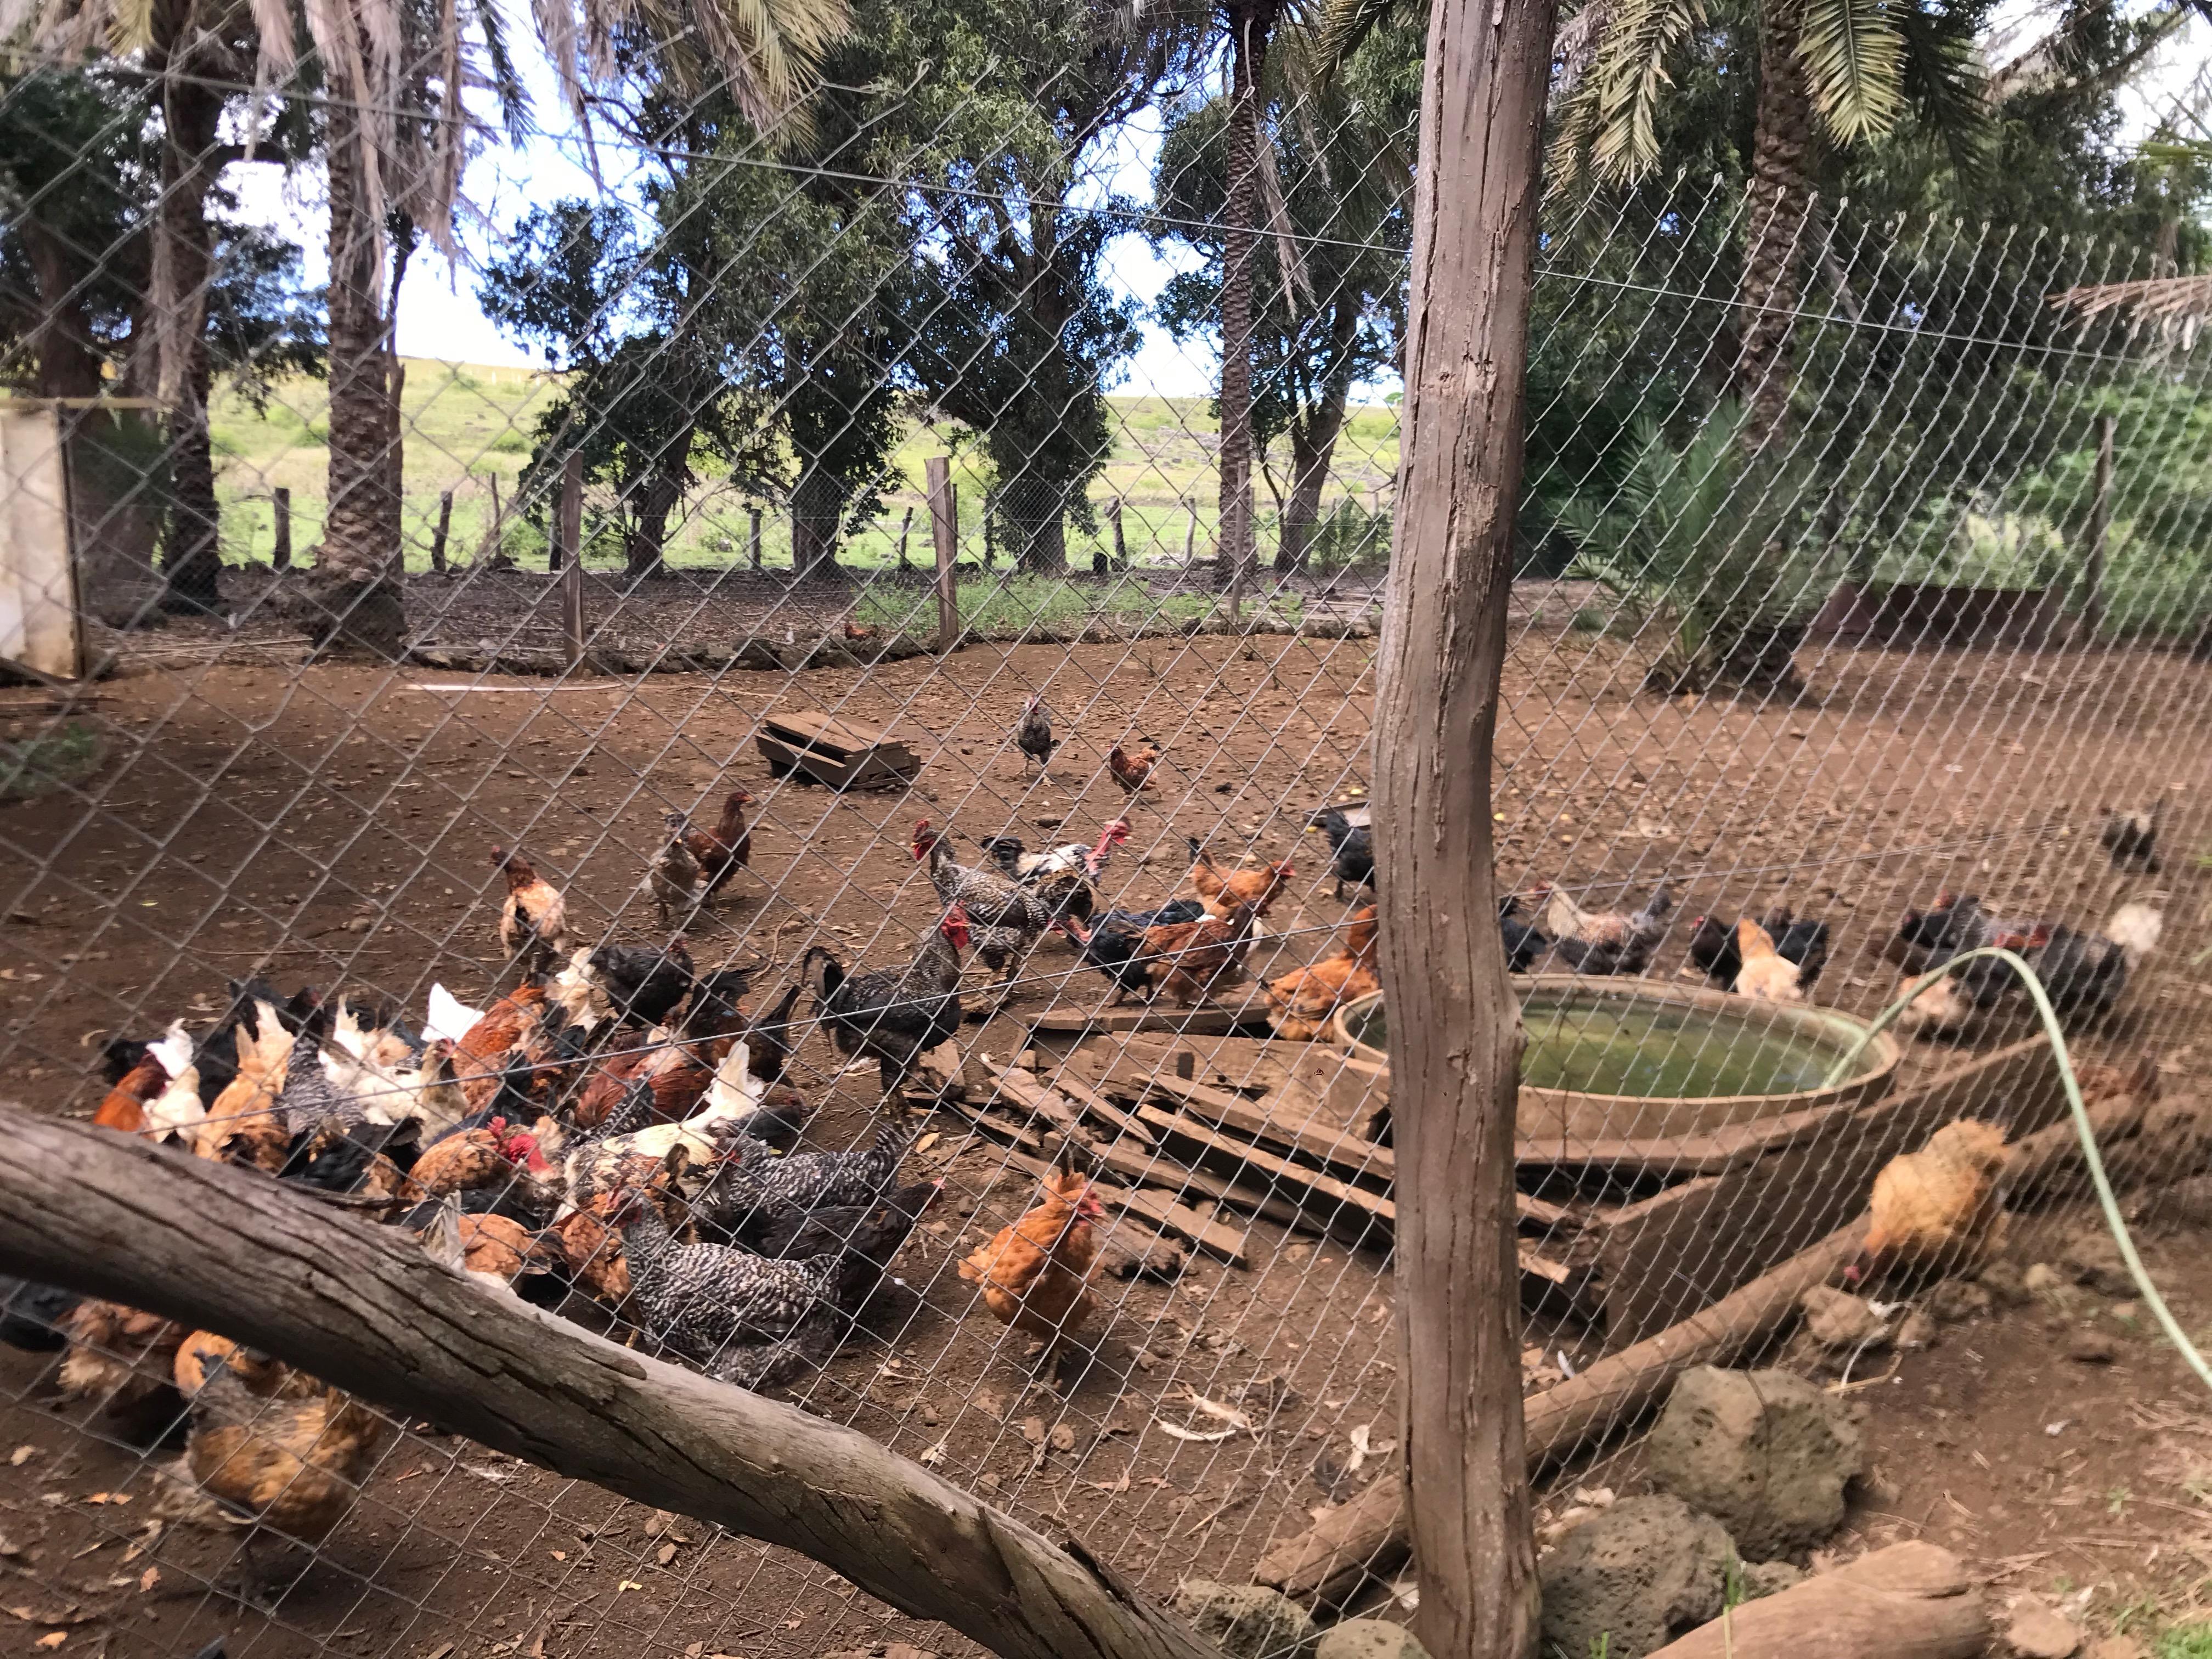 Los investigadores lograron identificar la infección con virus influenza en aves y cerdos mantenidos en sistemas de producción de traspatio (asociada a pequeños productores) en Chile central.